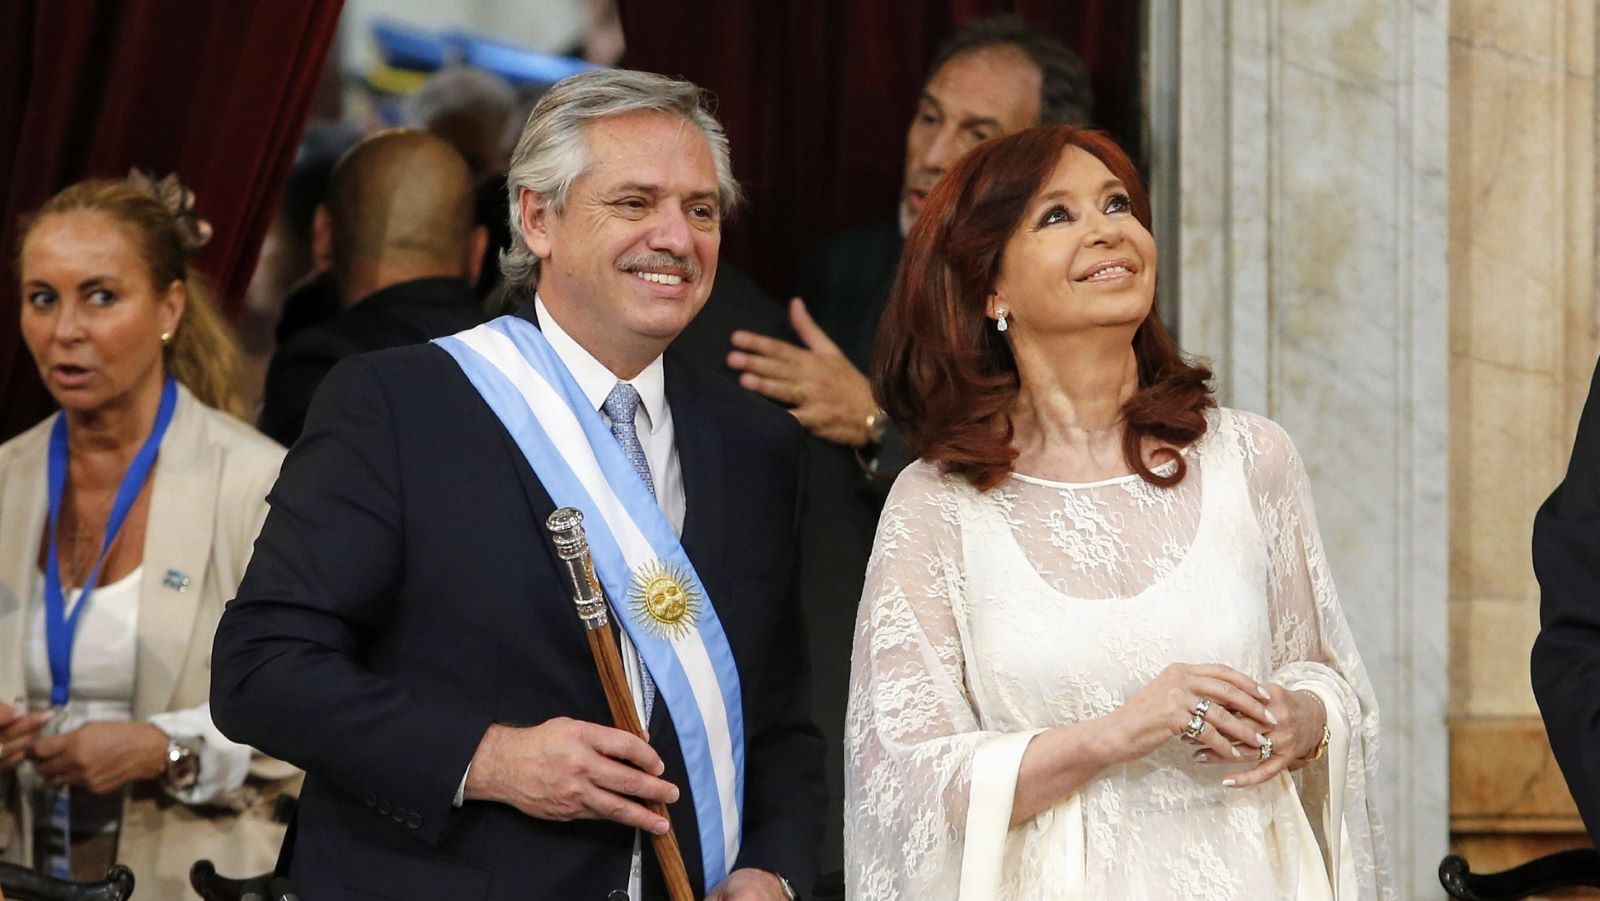 Alberto Fernández og Cristina Kirchner